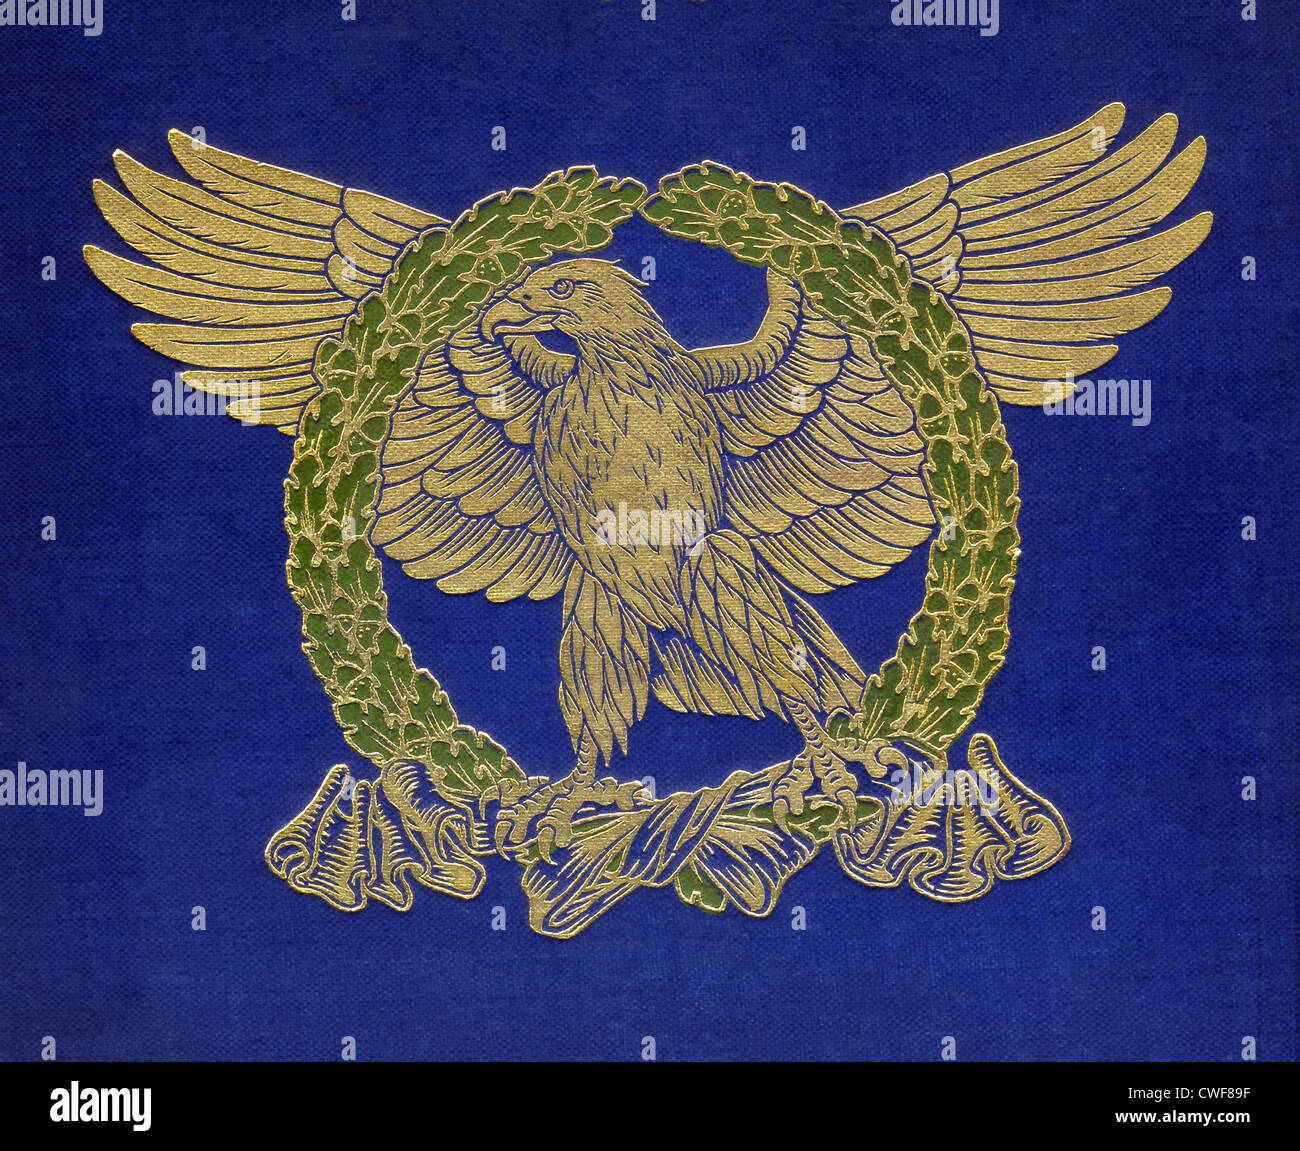 Der Adler galt bei den Römern als der Vogel des großen Gottes Jupiter (Zeus bei den Griechen). Stockfoto